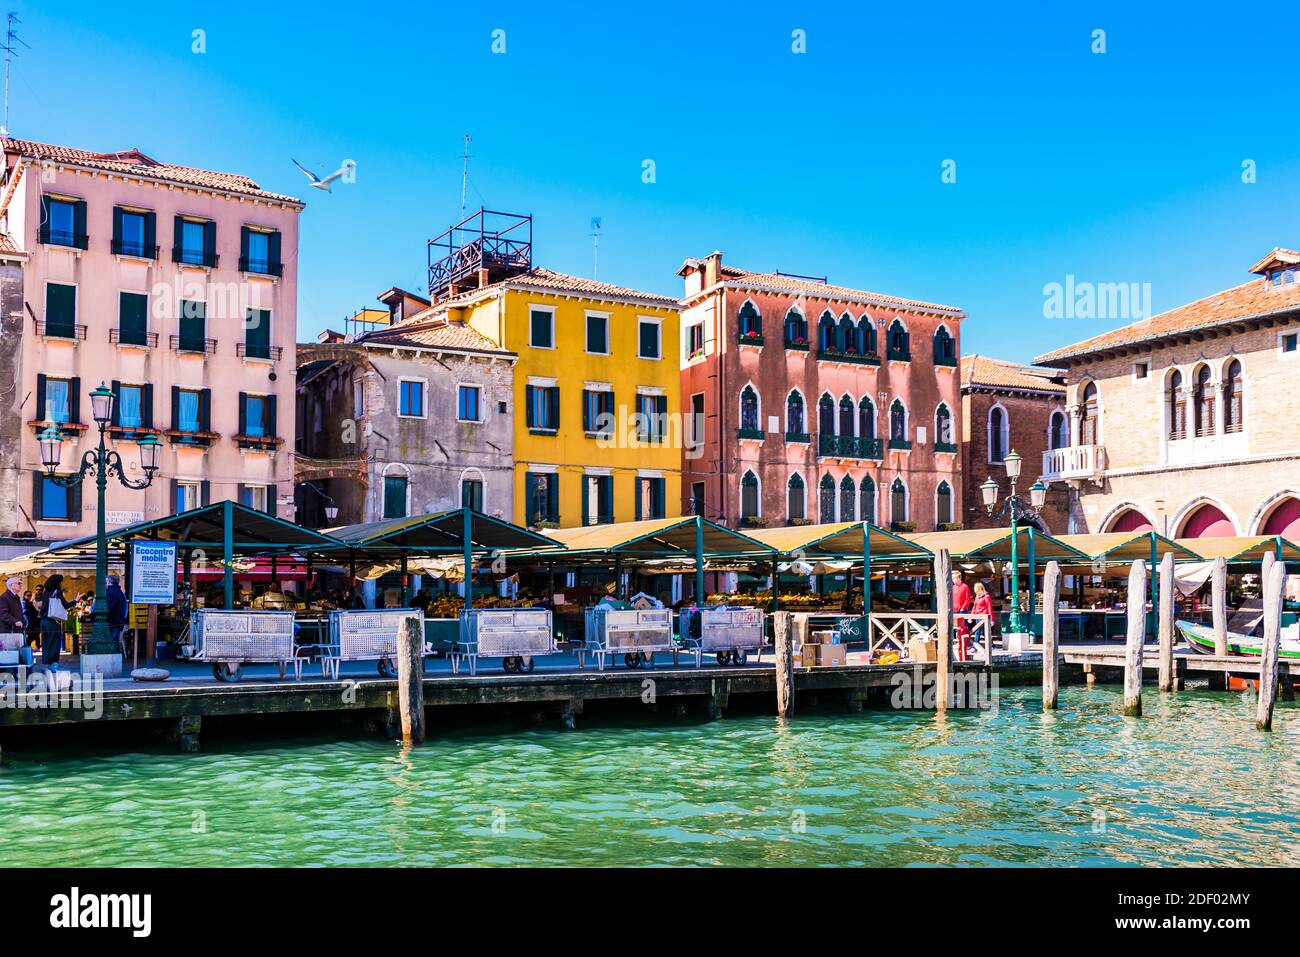 Marché du Rialto dont l'antiquité remonte à 1250 et qui doit son nom à son emplacement, le Pont du Rialto. Venise, Vénétie, Italie, Europe Banque D'Images